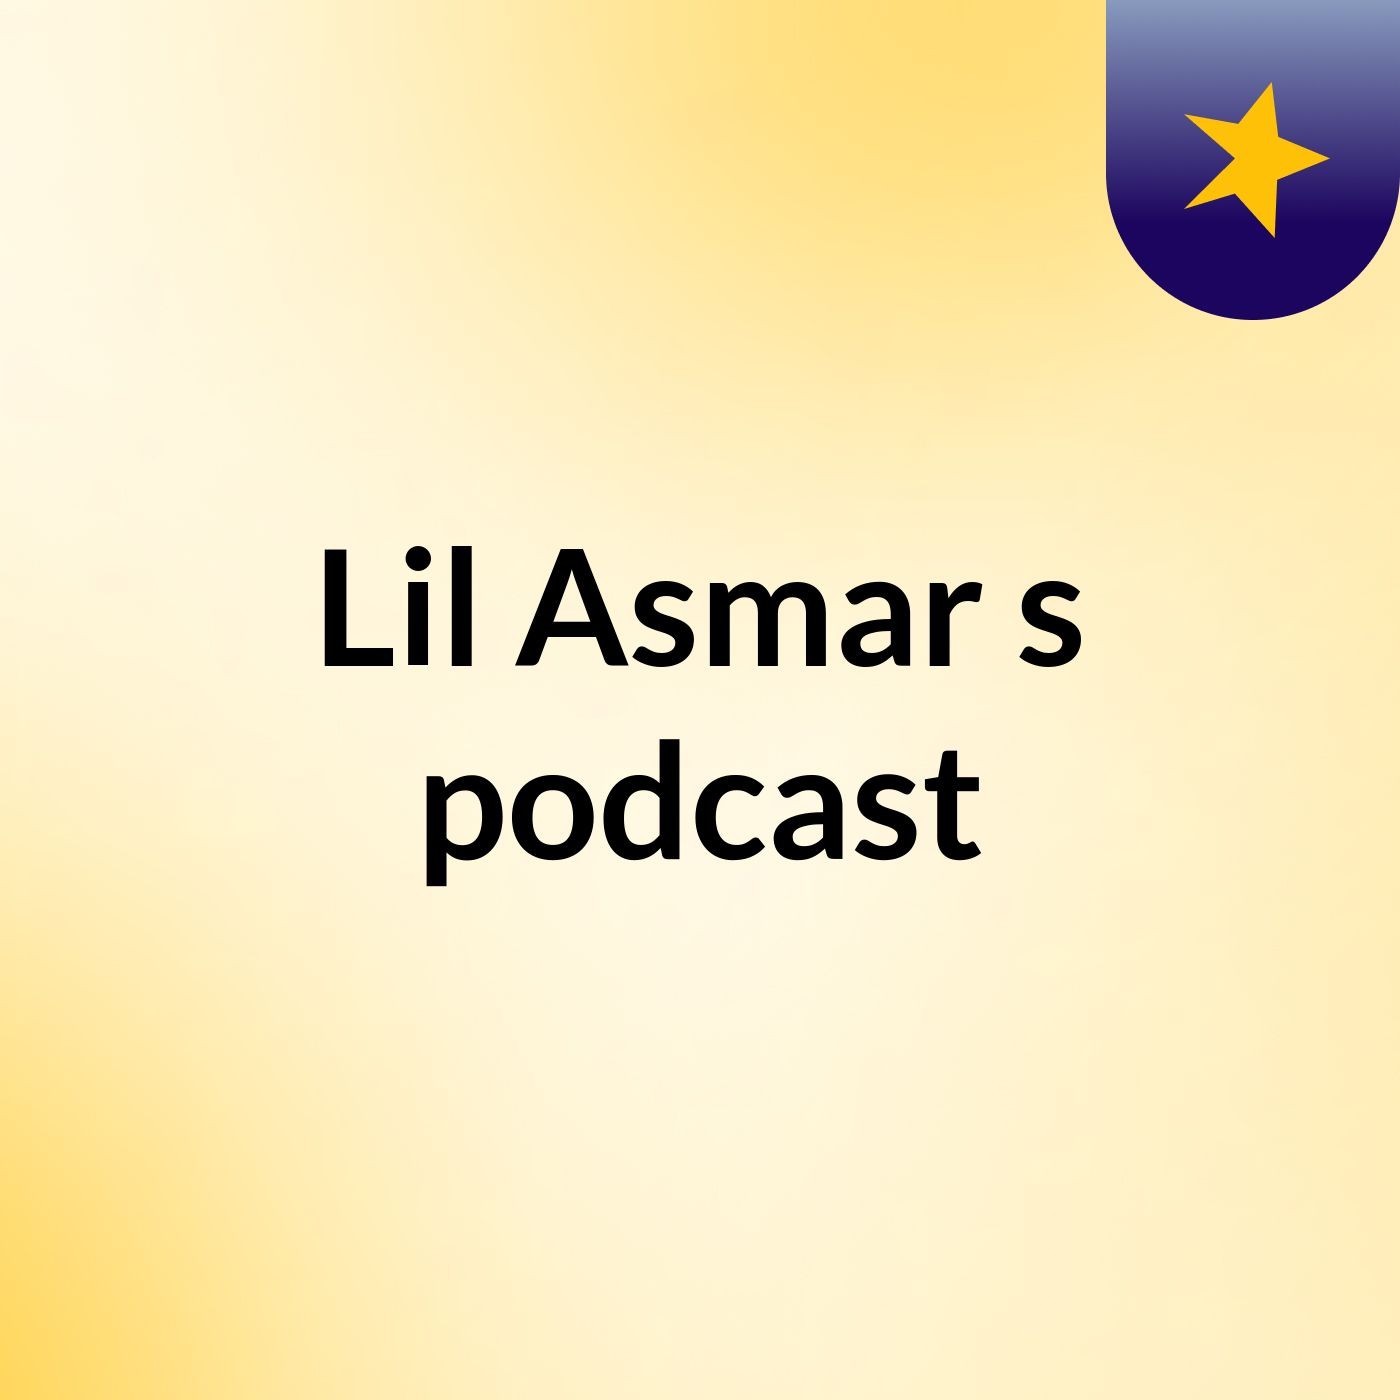 Episode 17 - Lil Asmar's podcast